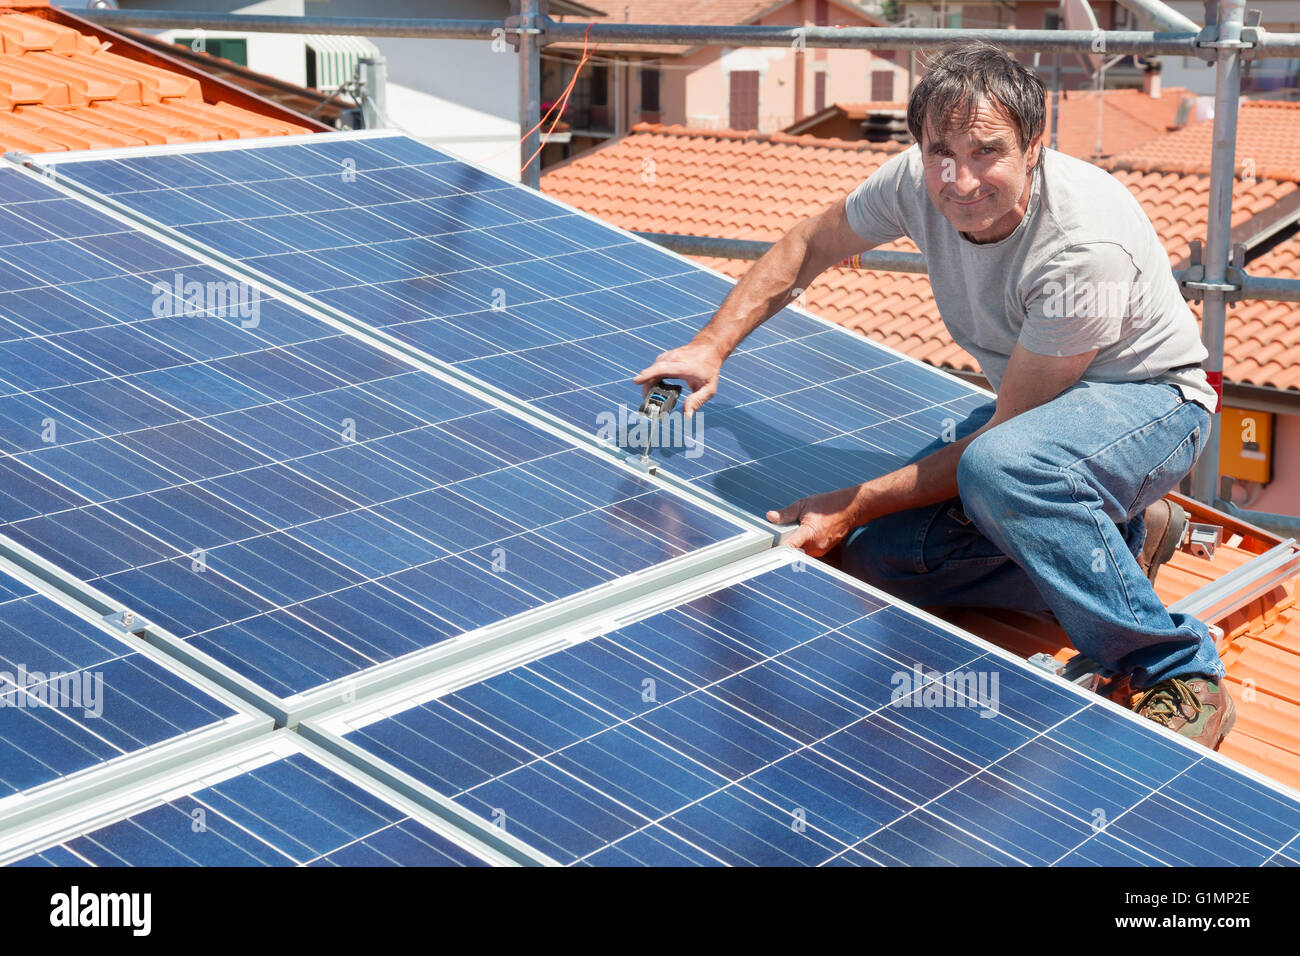 L'installation de l'homme de l'énergie de remplacement des panneaux solaires photovoltaïques sur le toit Banque D'Images